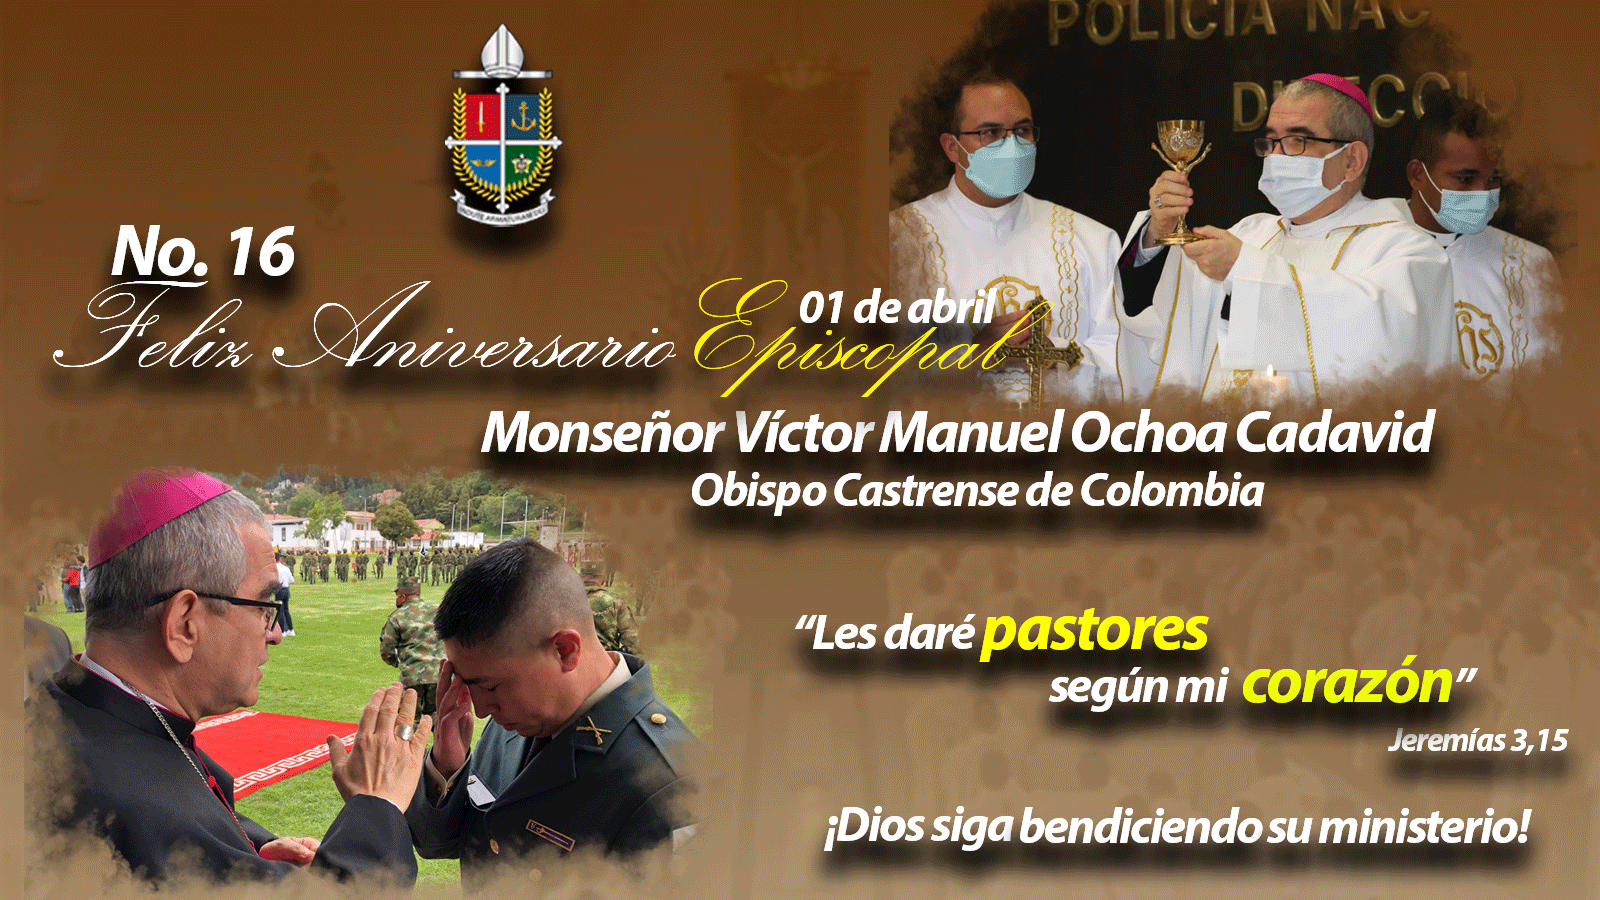 En Acción De Gracias Por El Aniversario Episcopal De Nuestro Obispo Y Pastor, Monseñor Víctor Manuel Ochoa Cadavid.